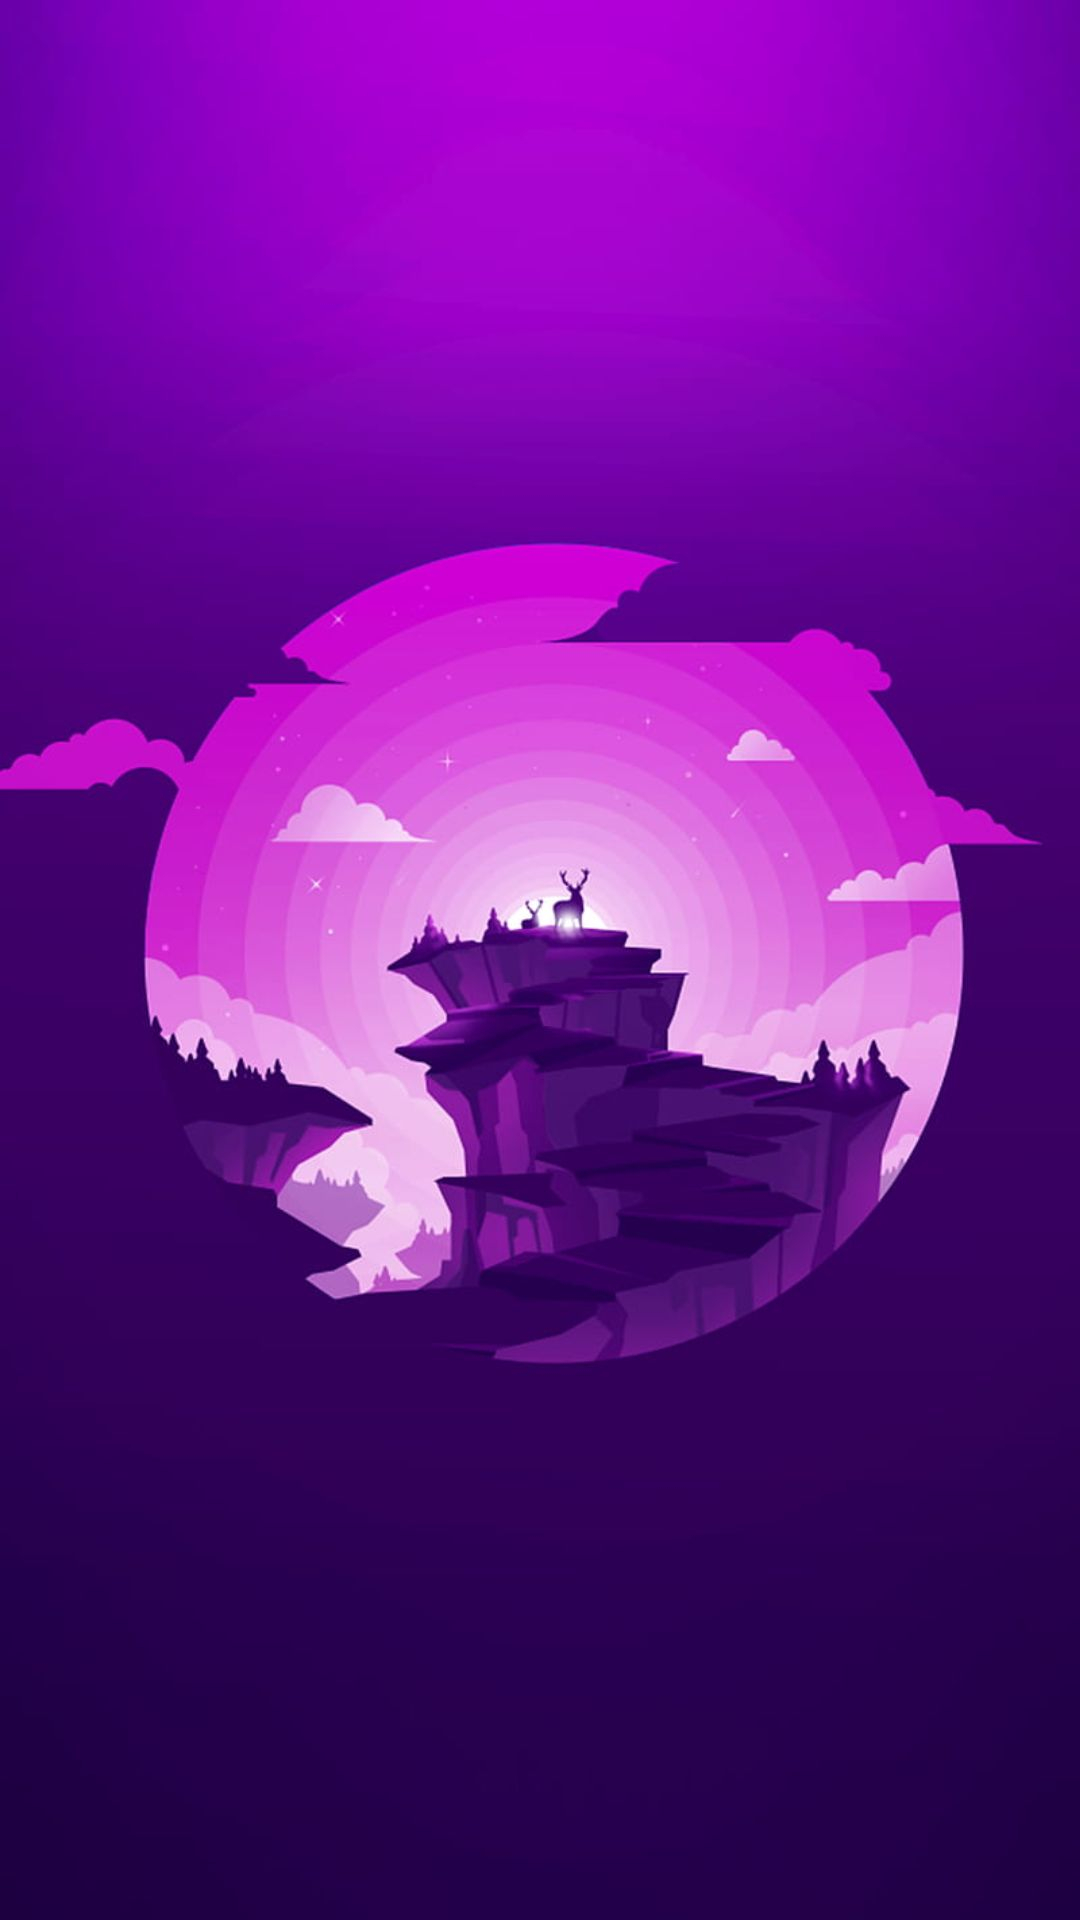 1080x1920 Purple Wallpaper- Top Best Quality Purple Backgrounds (HD, 4k